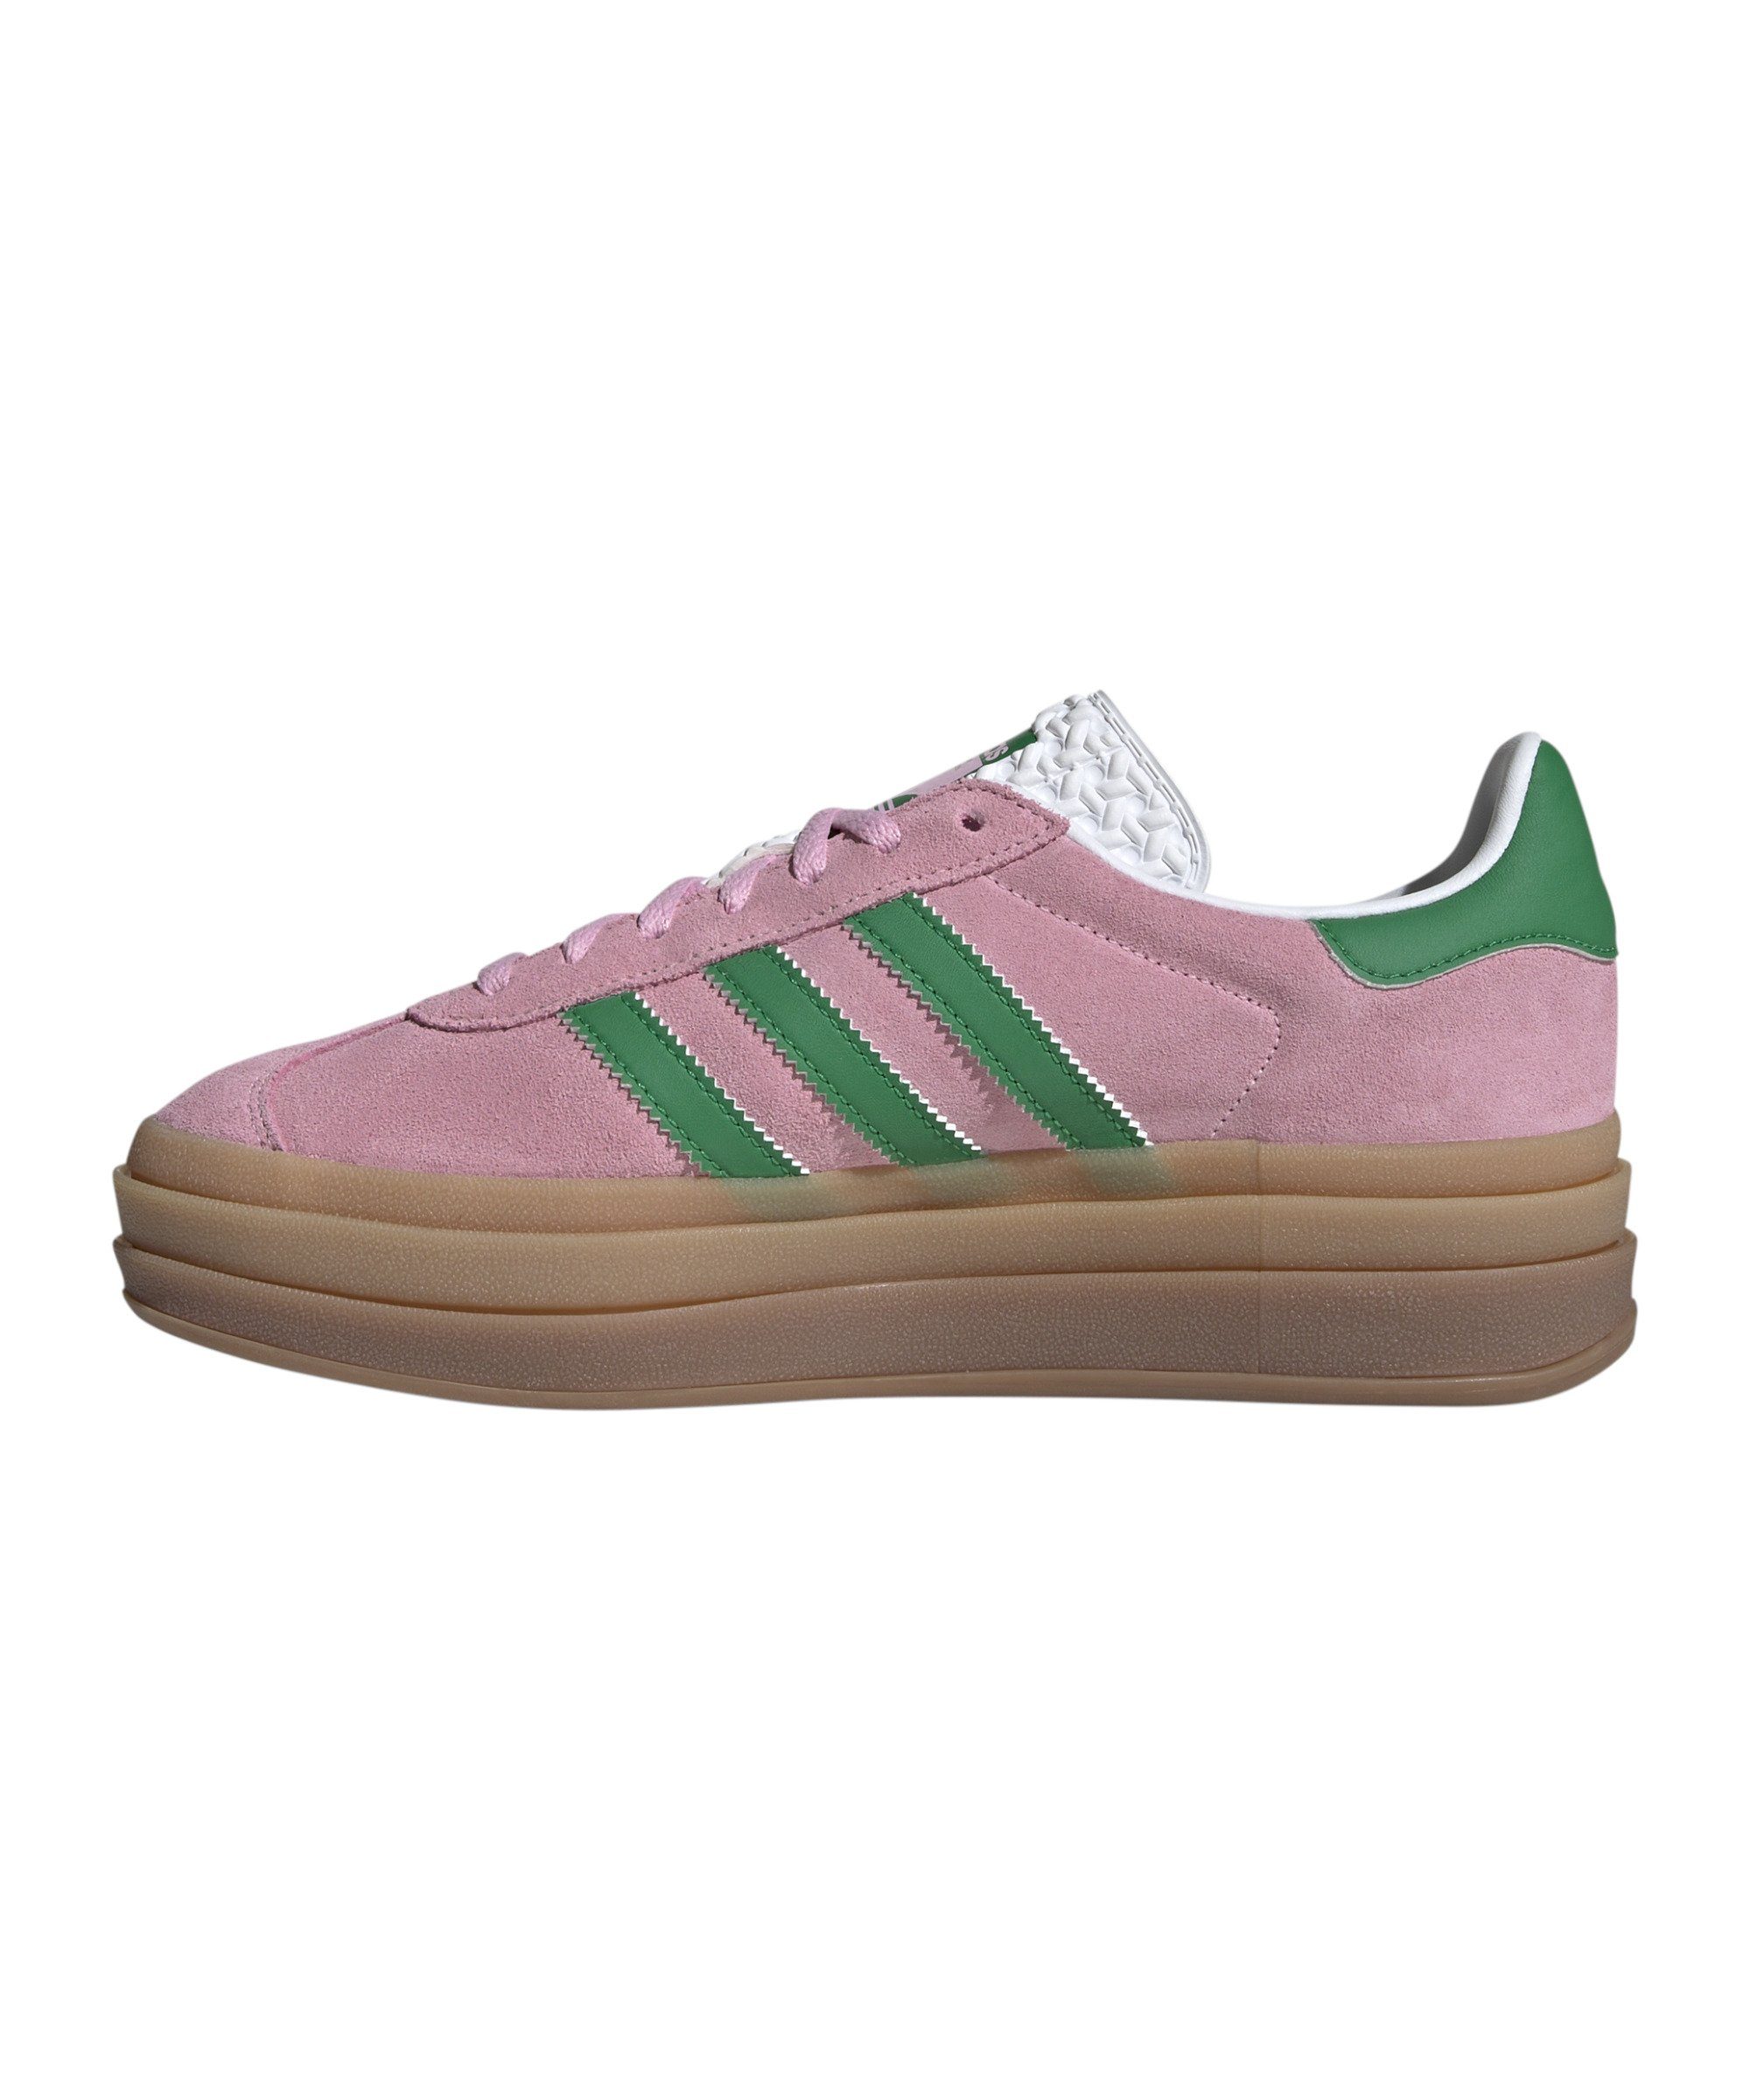 Bold adidas Originals Gazelle Damen pinkgruenweiss Sneaker